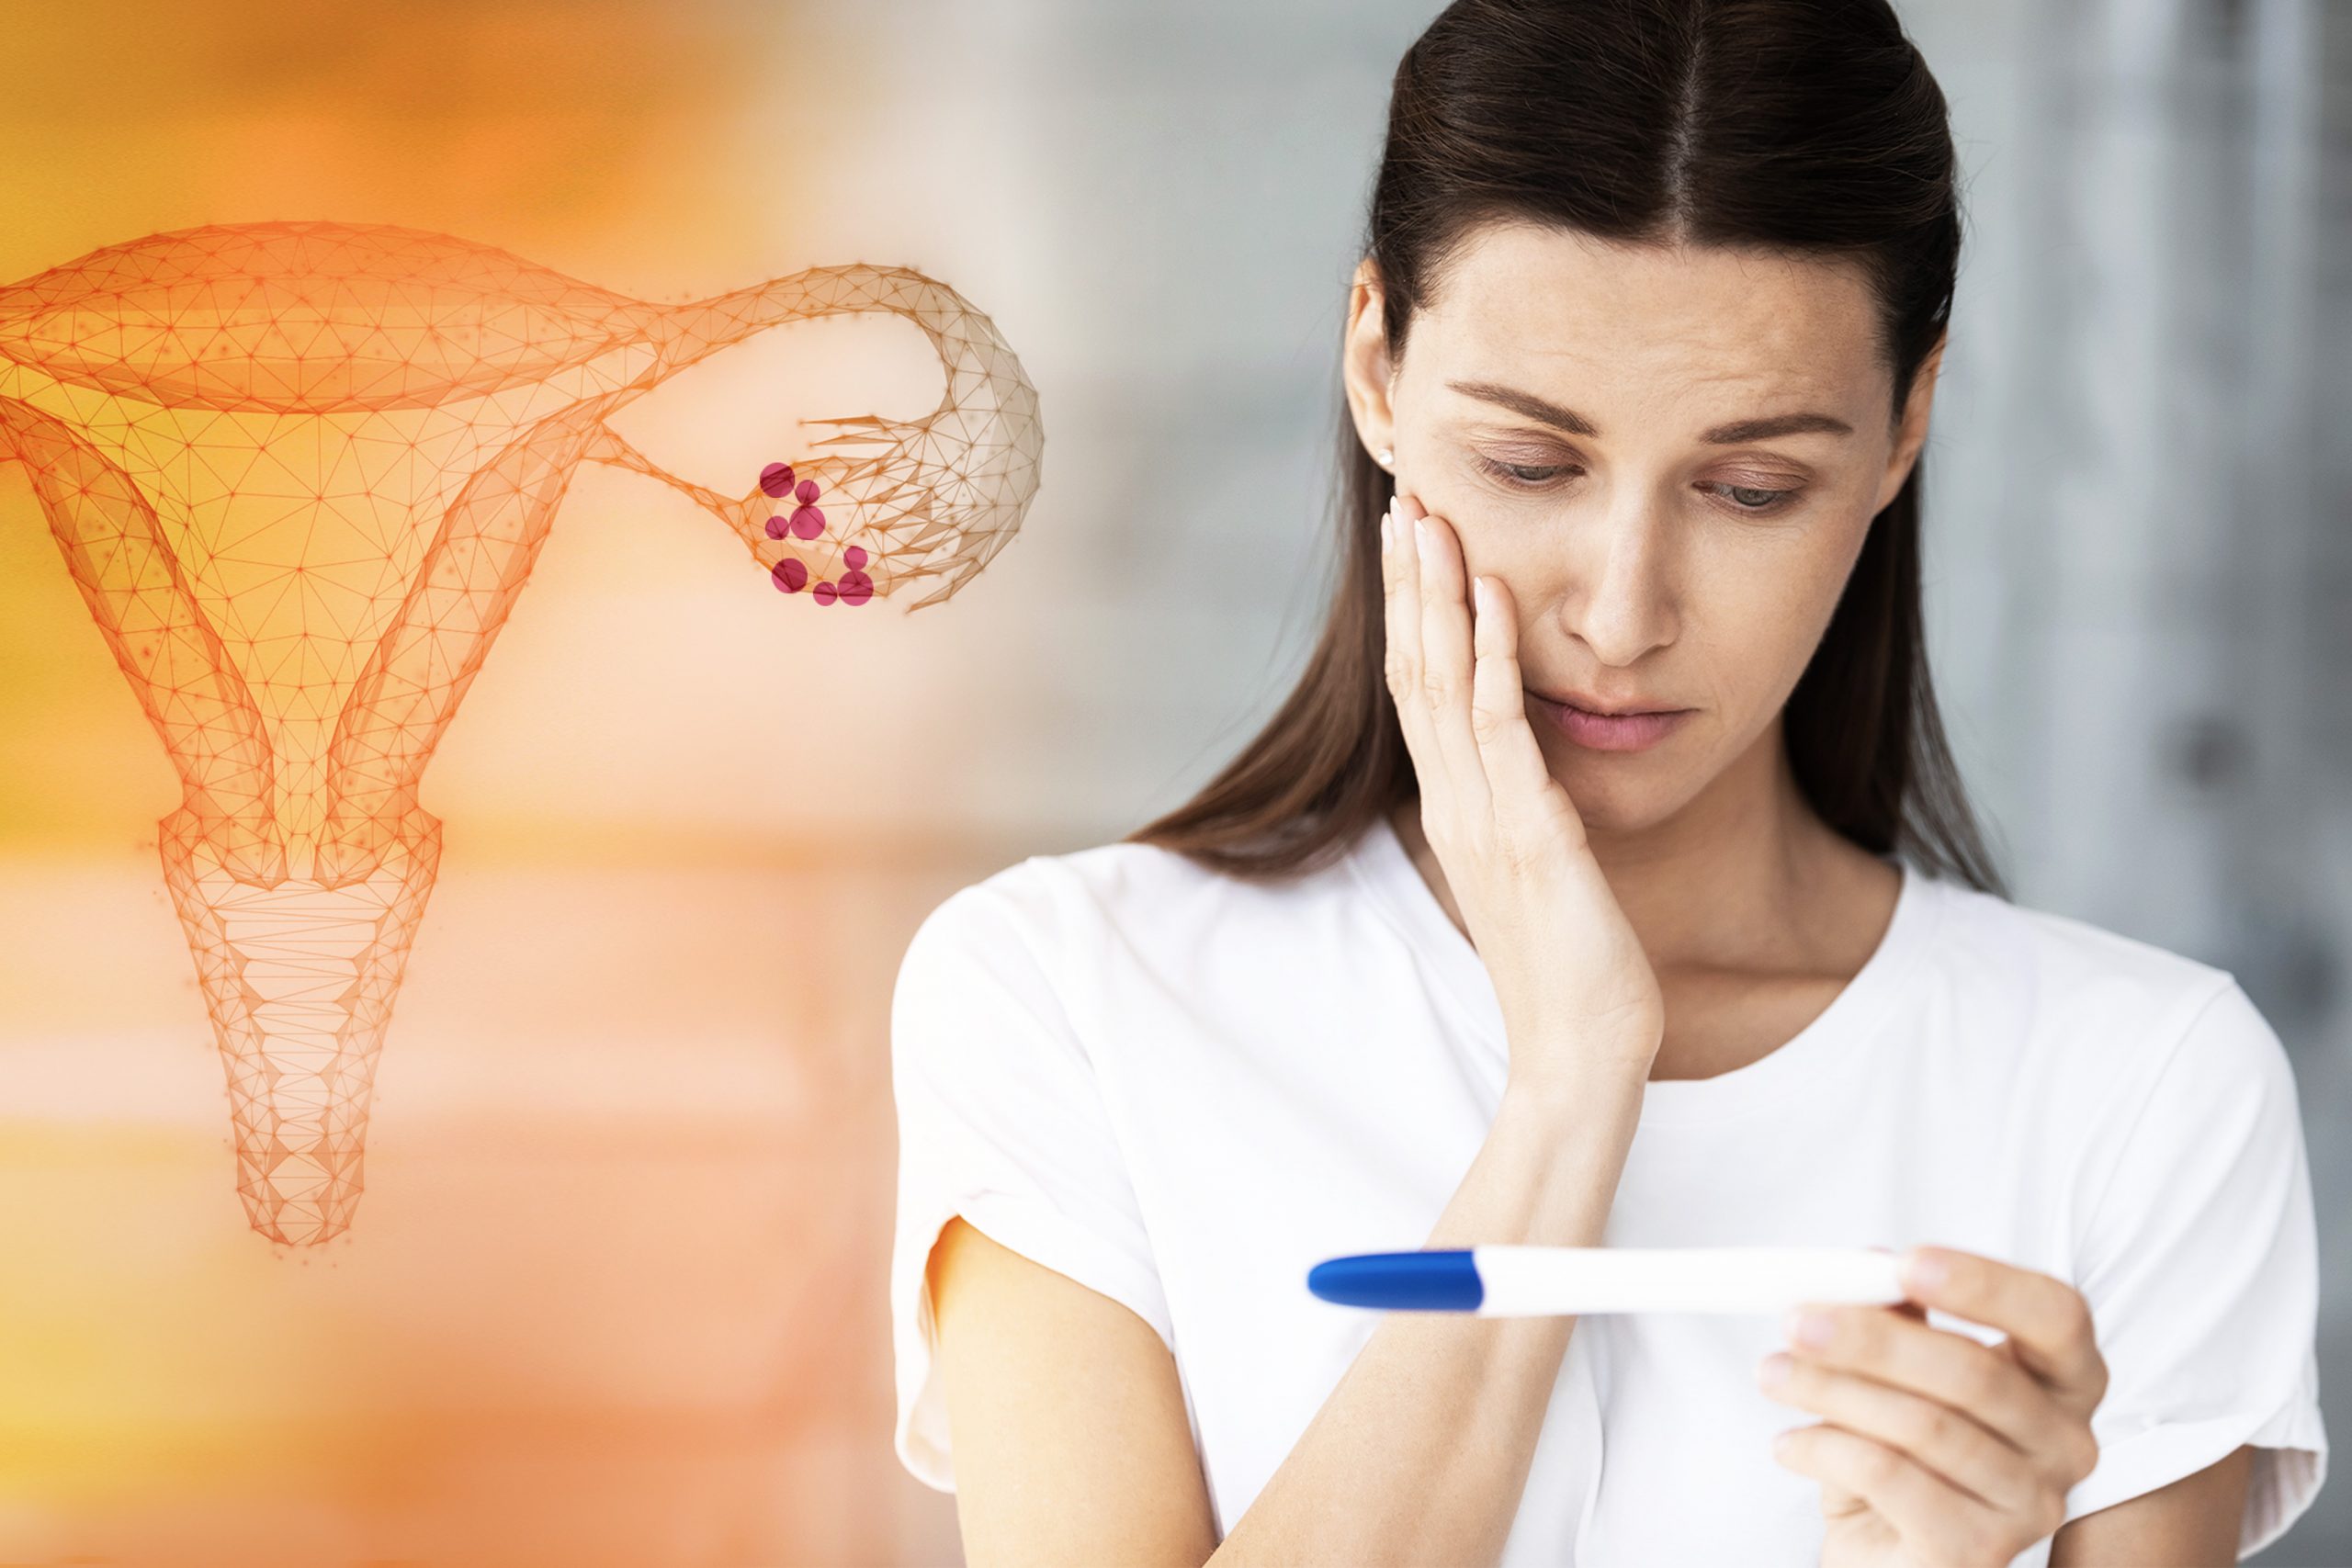 Endometrioma e infertilidade: existe relação?